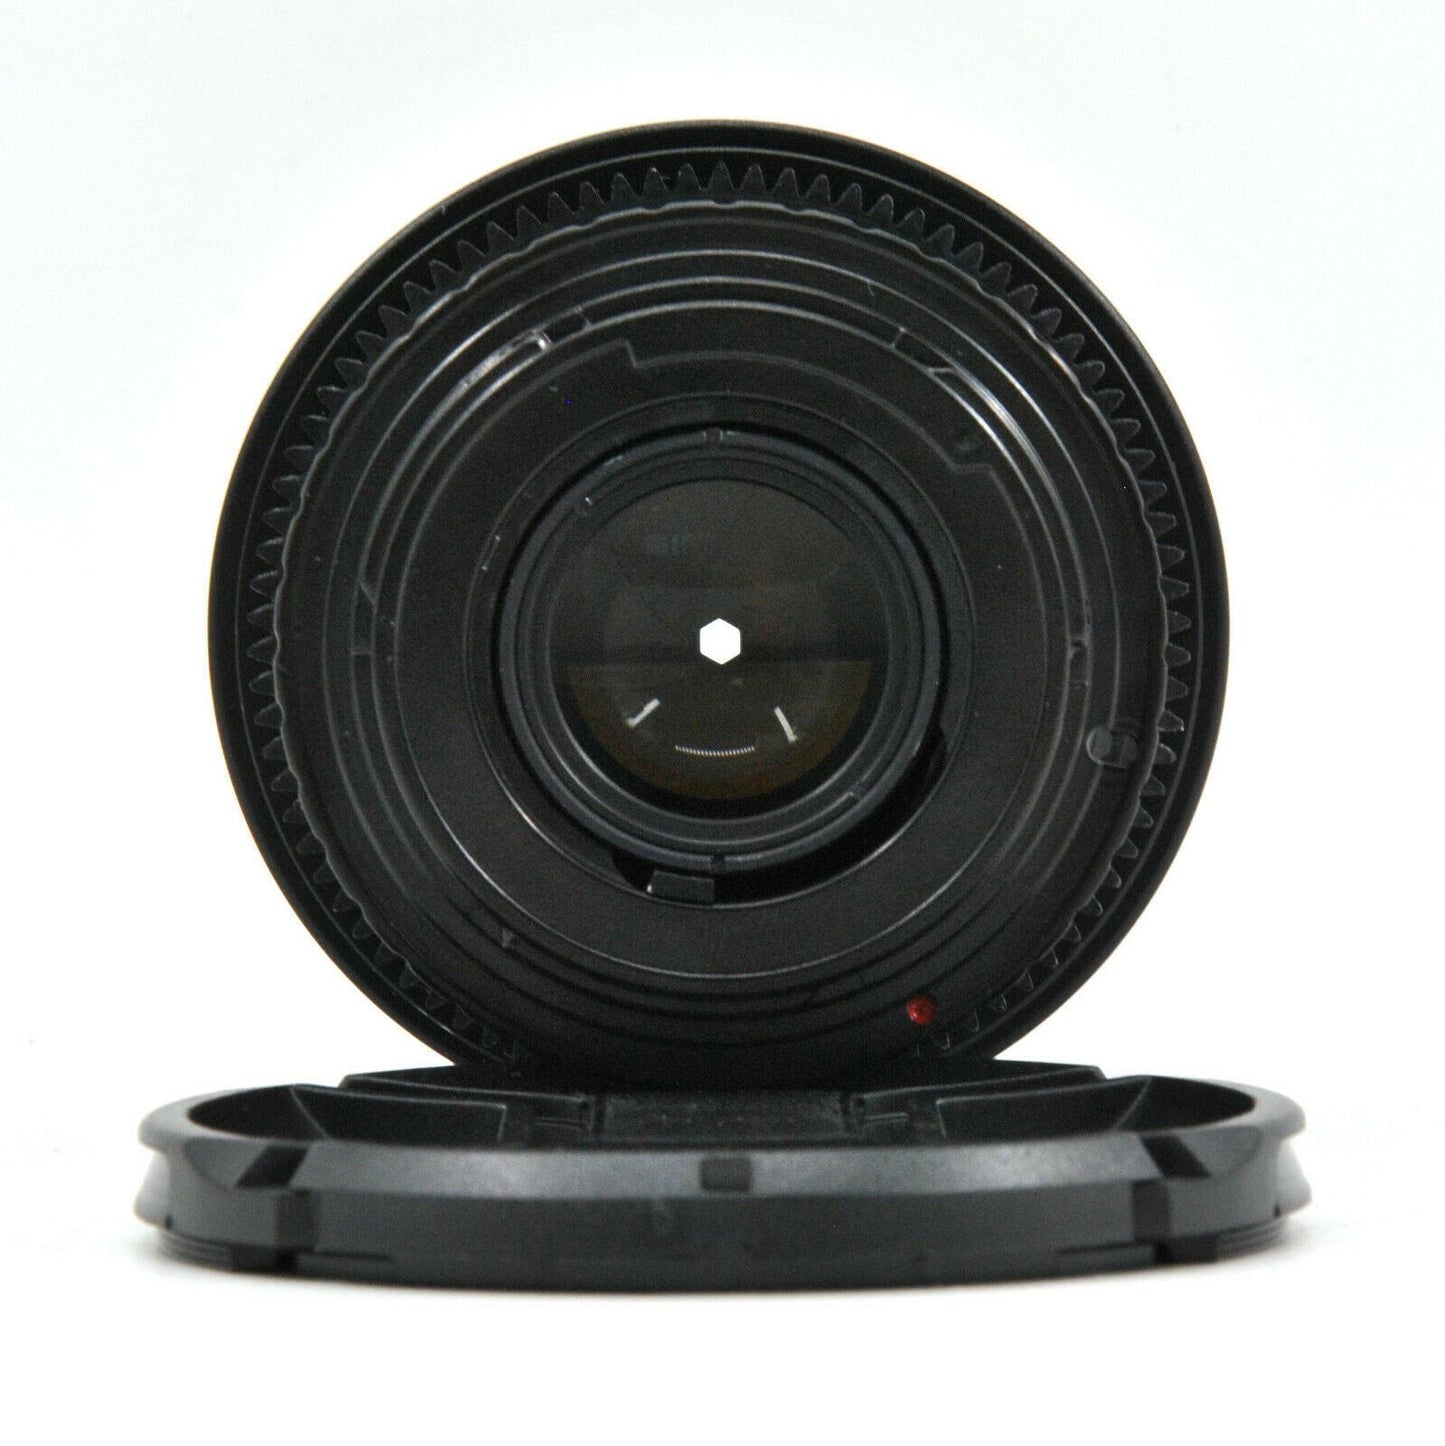 F2 Prime Cine Lens